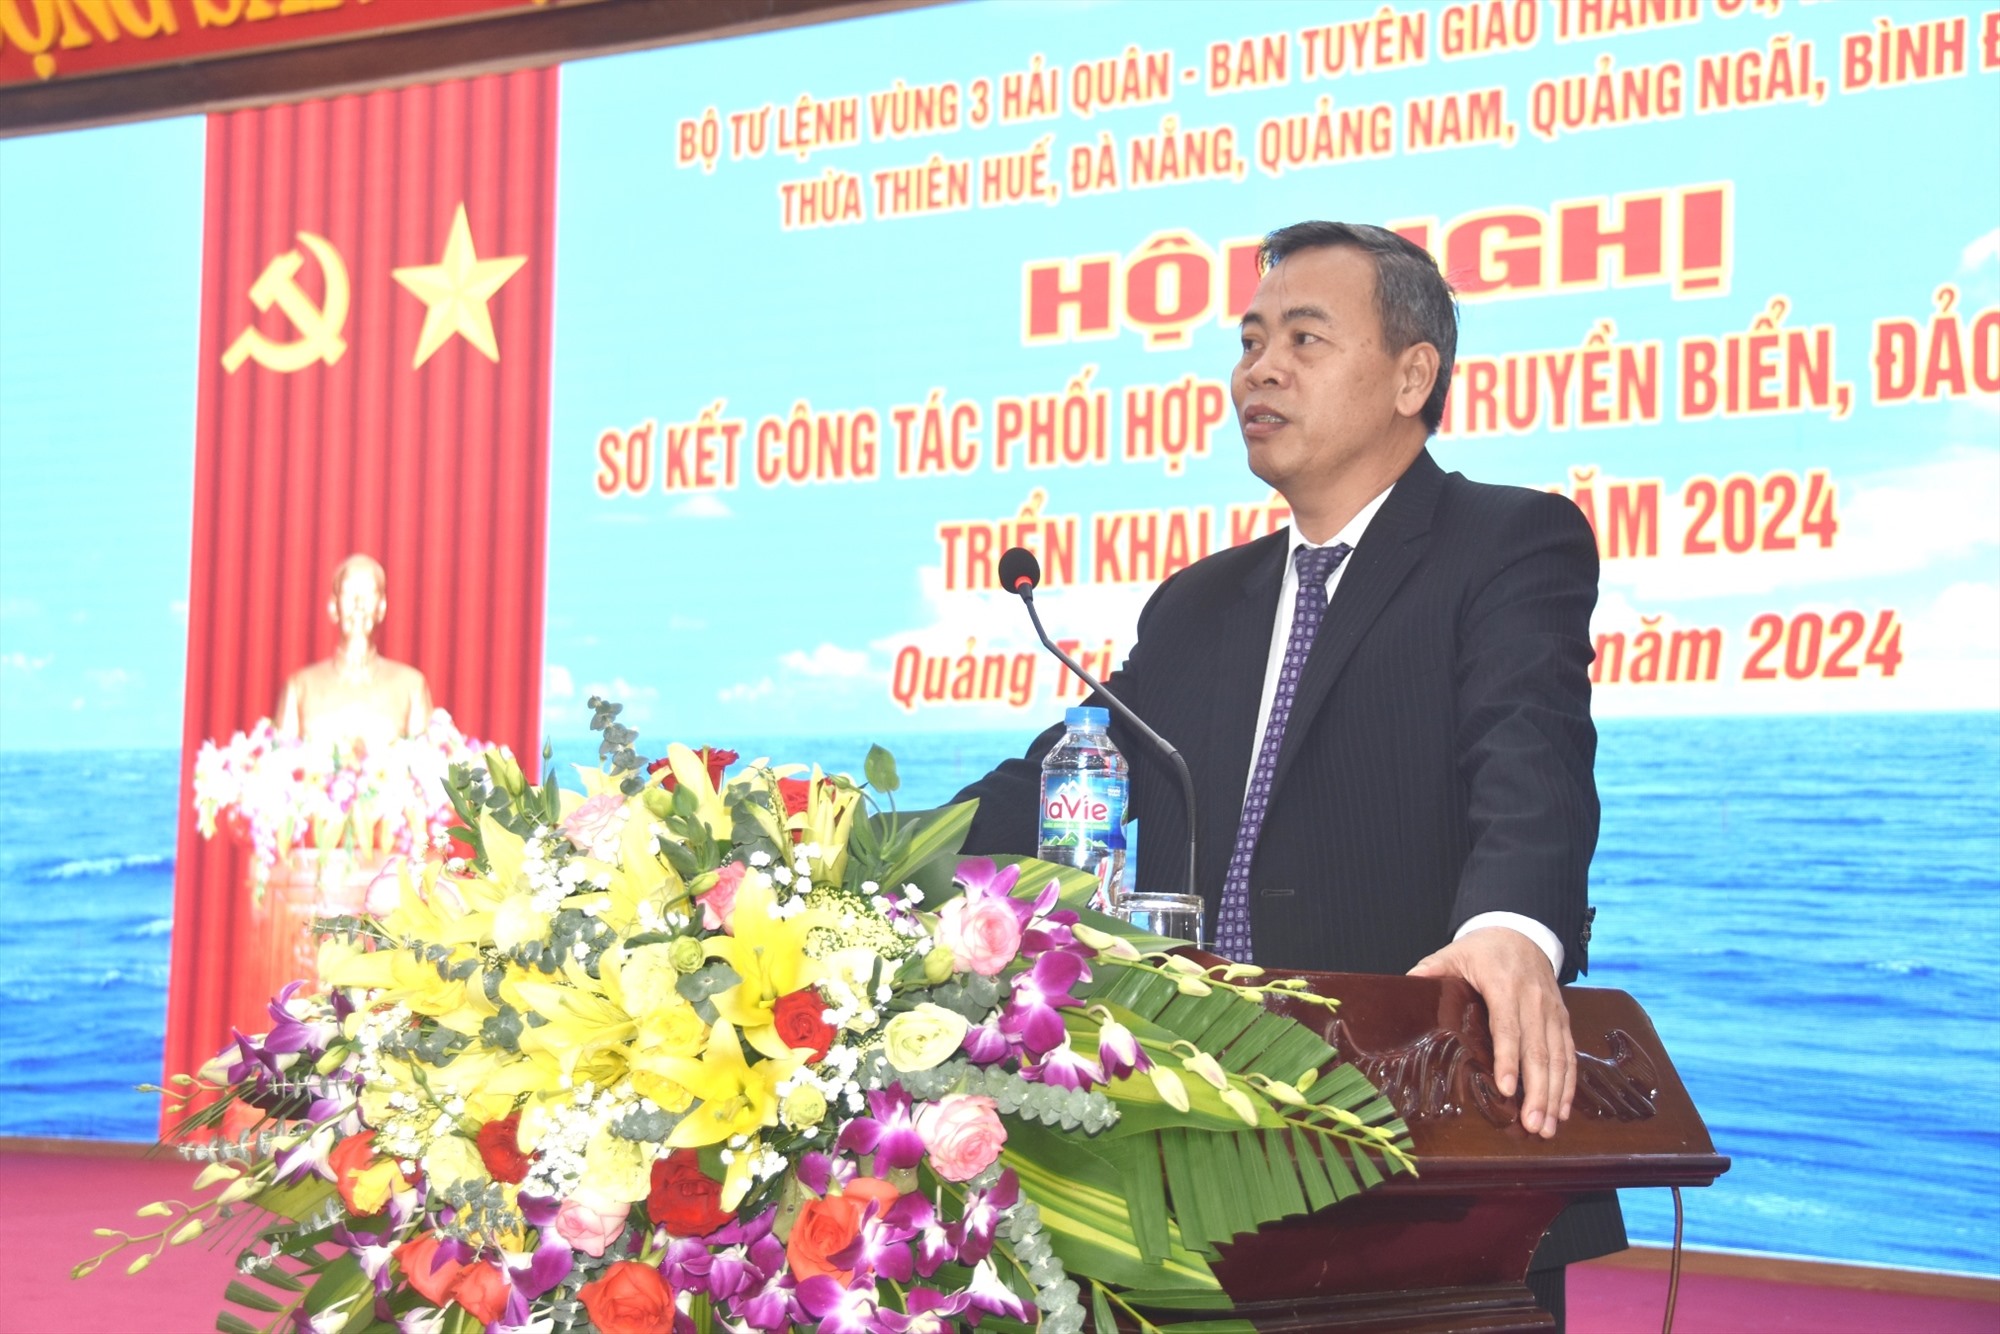 Phó Bí thư Thường trực Tỉnh ủy, Chủ tịch HĐND tỉnh Nguyễn Đăng Quang phát biểu chào mừng tại hội nghị - Ảnh: ĐV